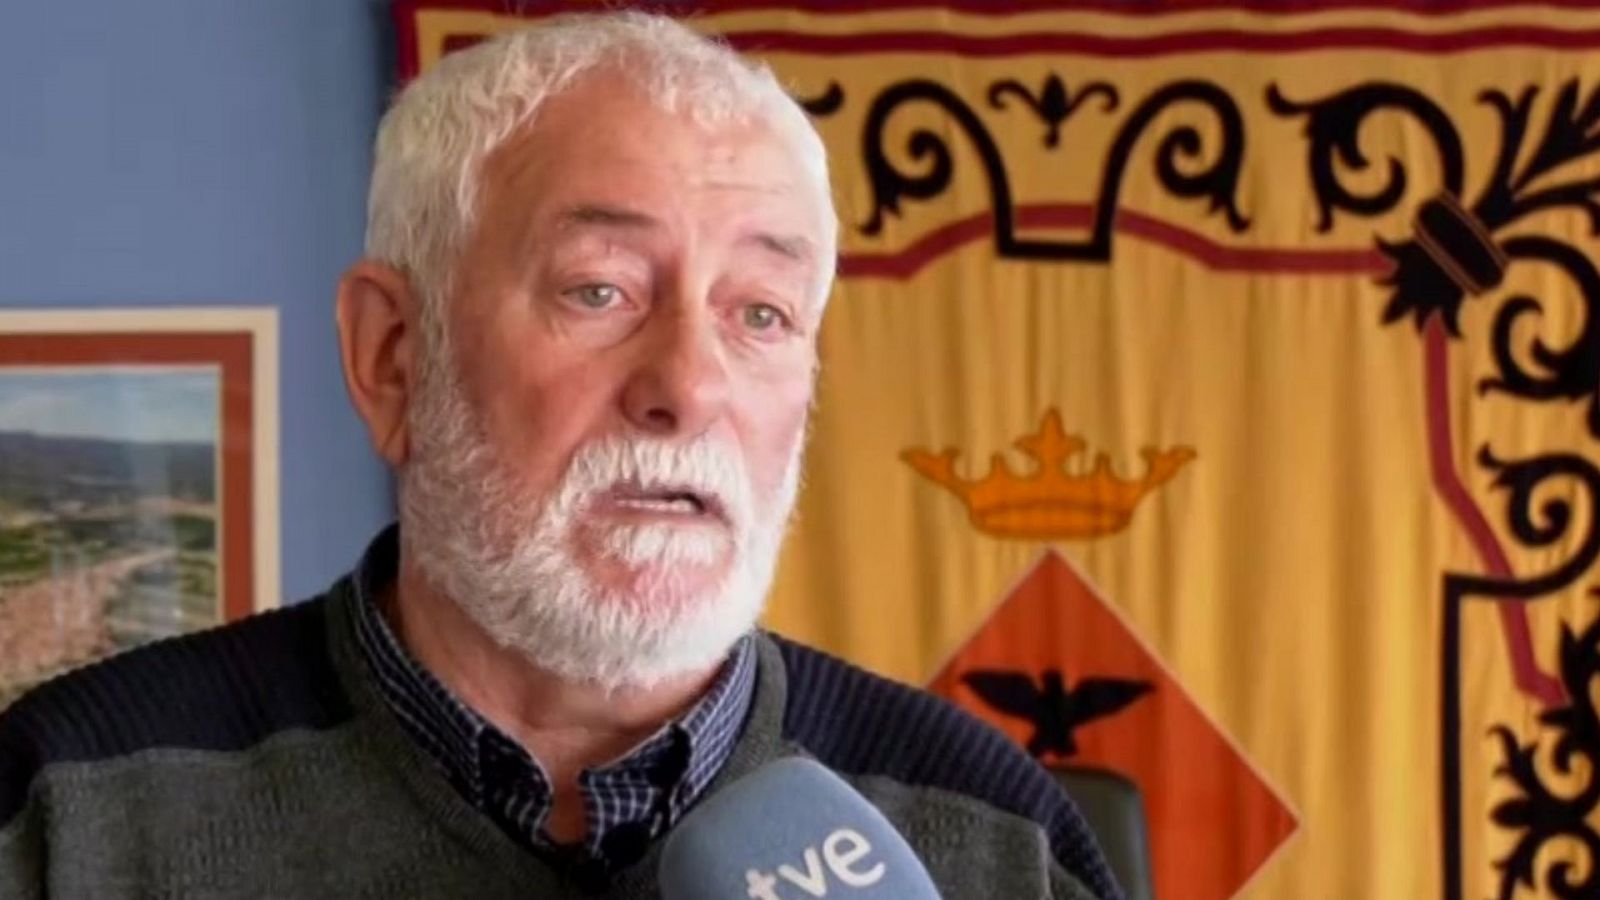 Alcalde de Camarles, tras el accidente mortal de tres menores: "Es una desgracia para el pueblo"  - Ver ahora